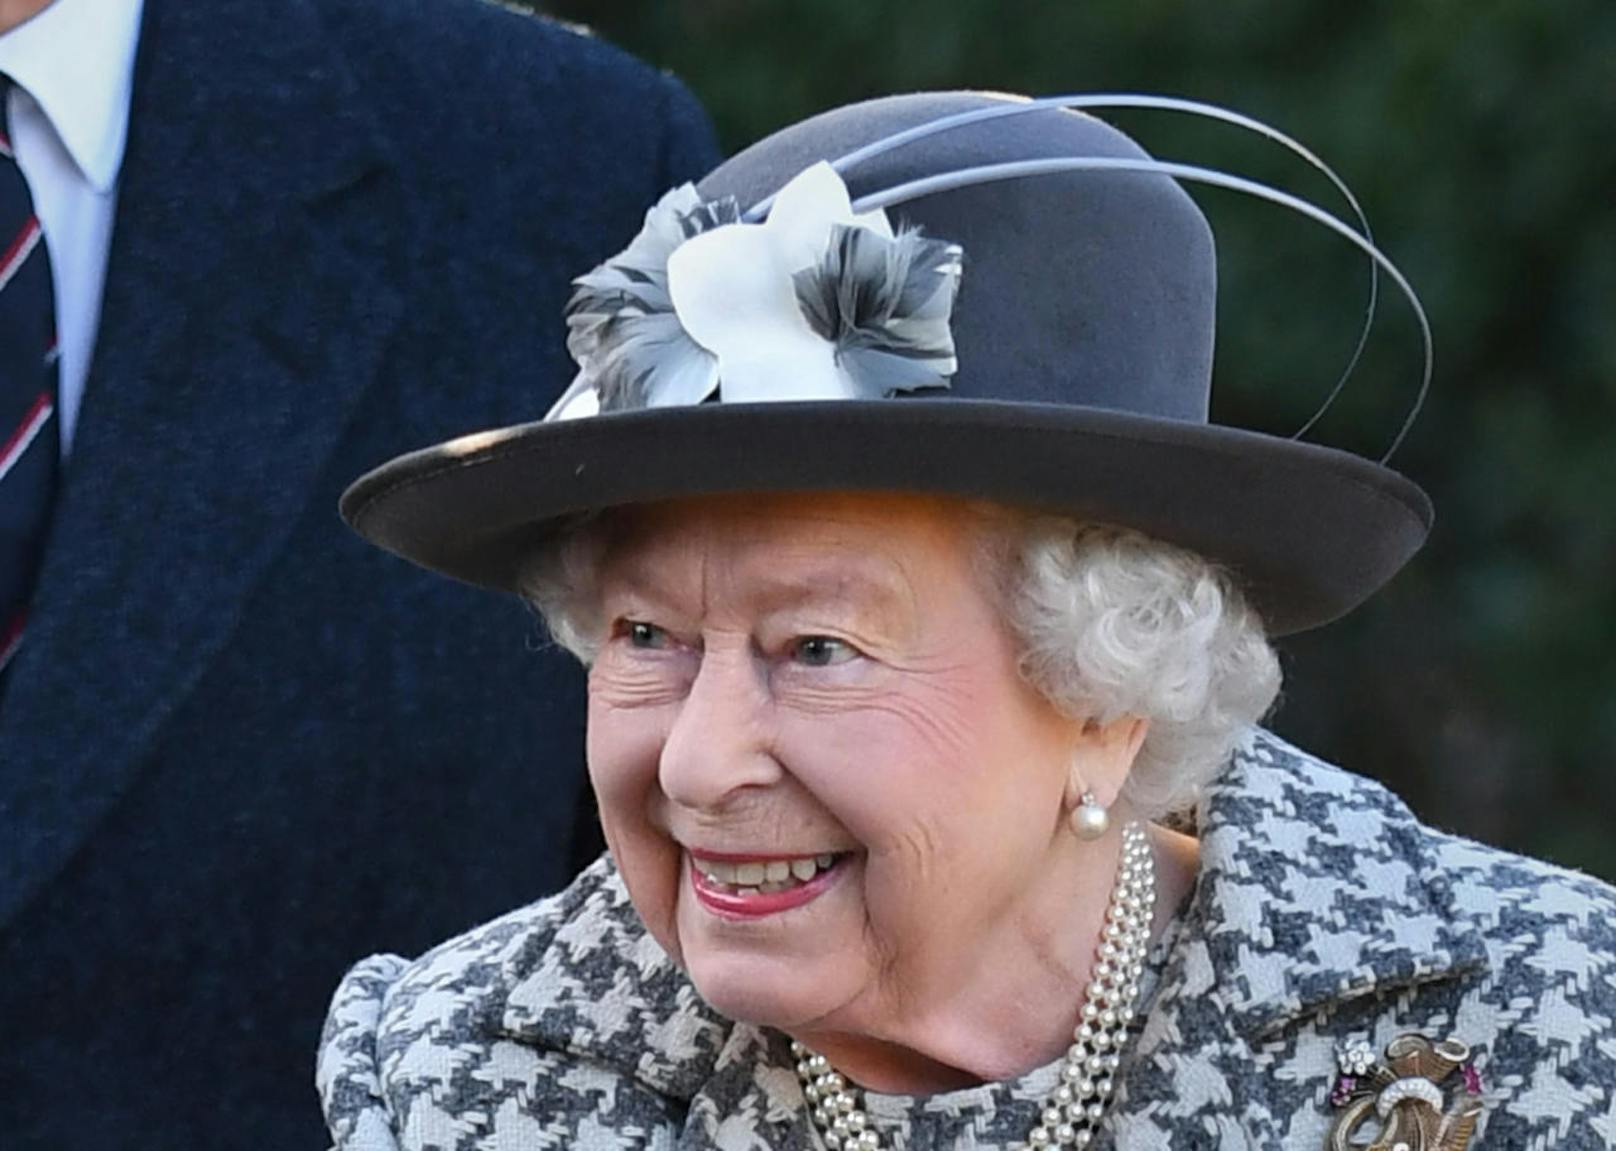 Für die Queen war es der erste offizielle Auftritt seit Prinz Harry und Herzogin Meghan für den Megxit-Wirbel sorgten. Die Monarchin wirkte gelöst.